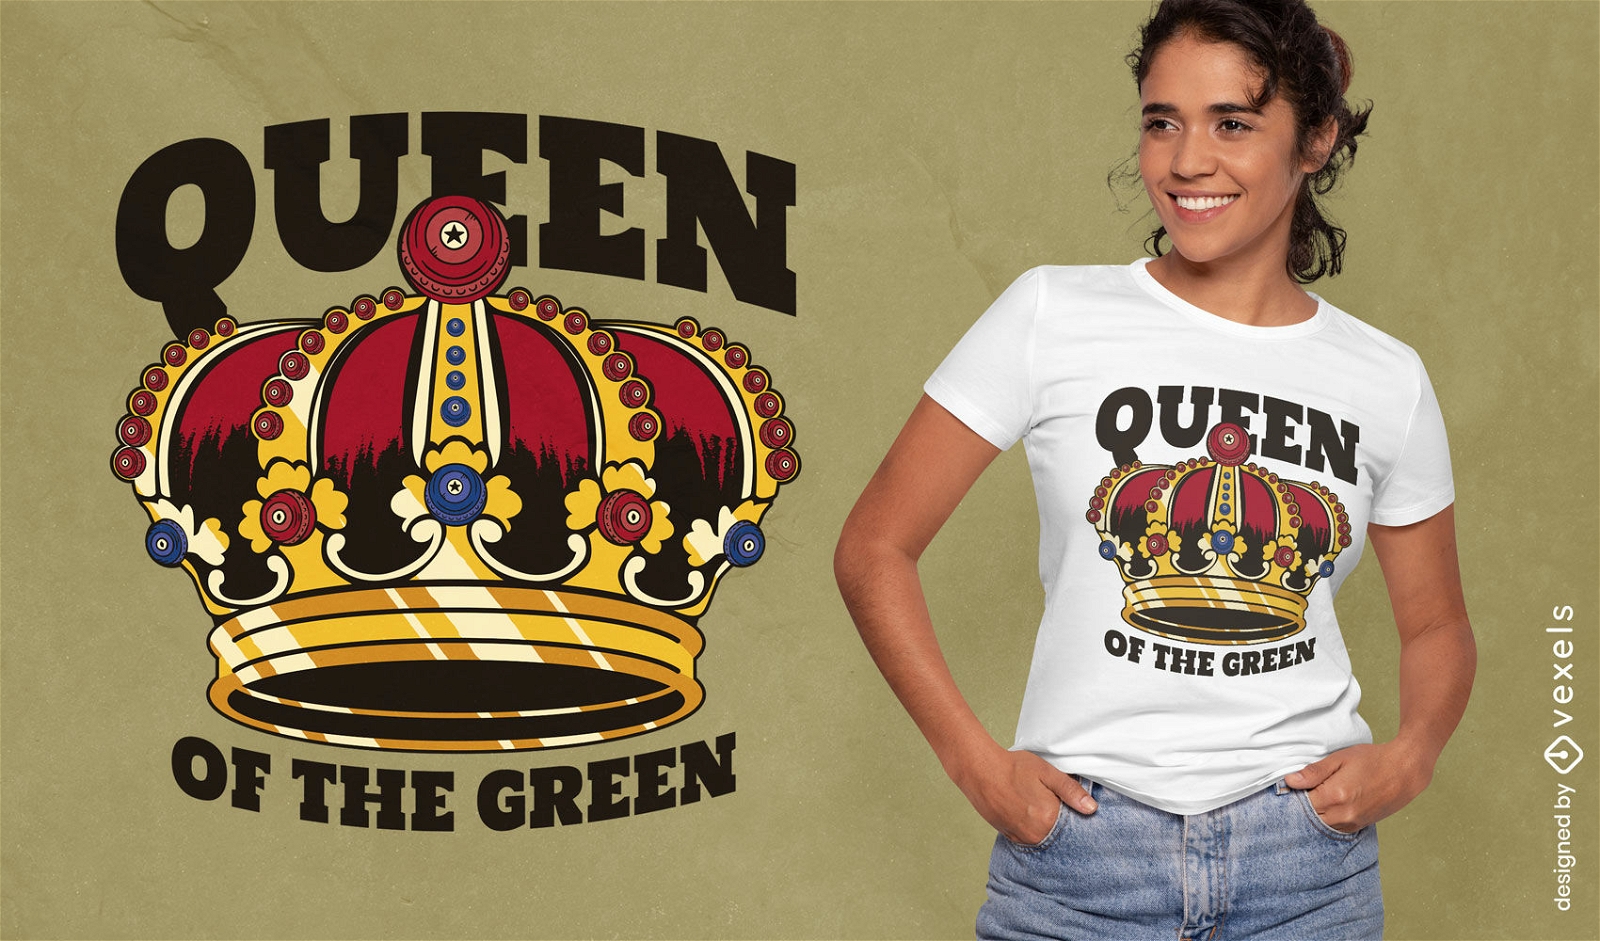 Königin des grünen T-Shirt-Designs